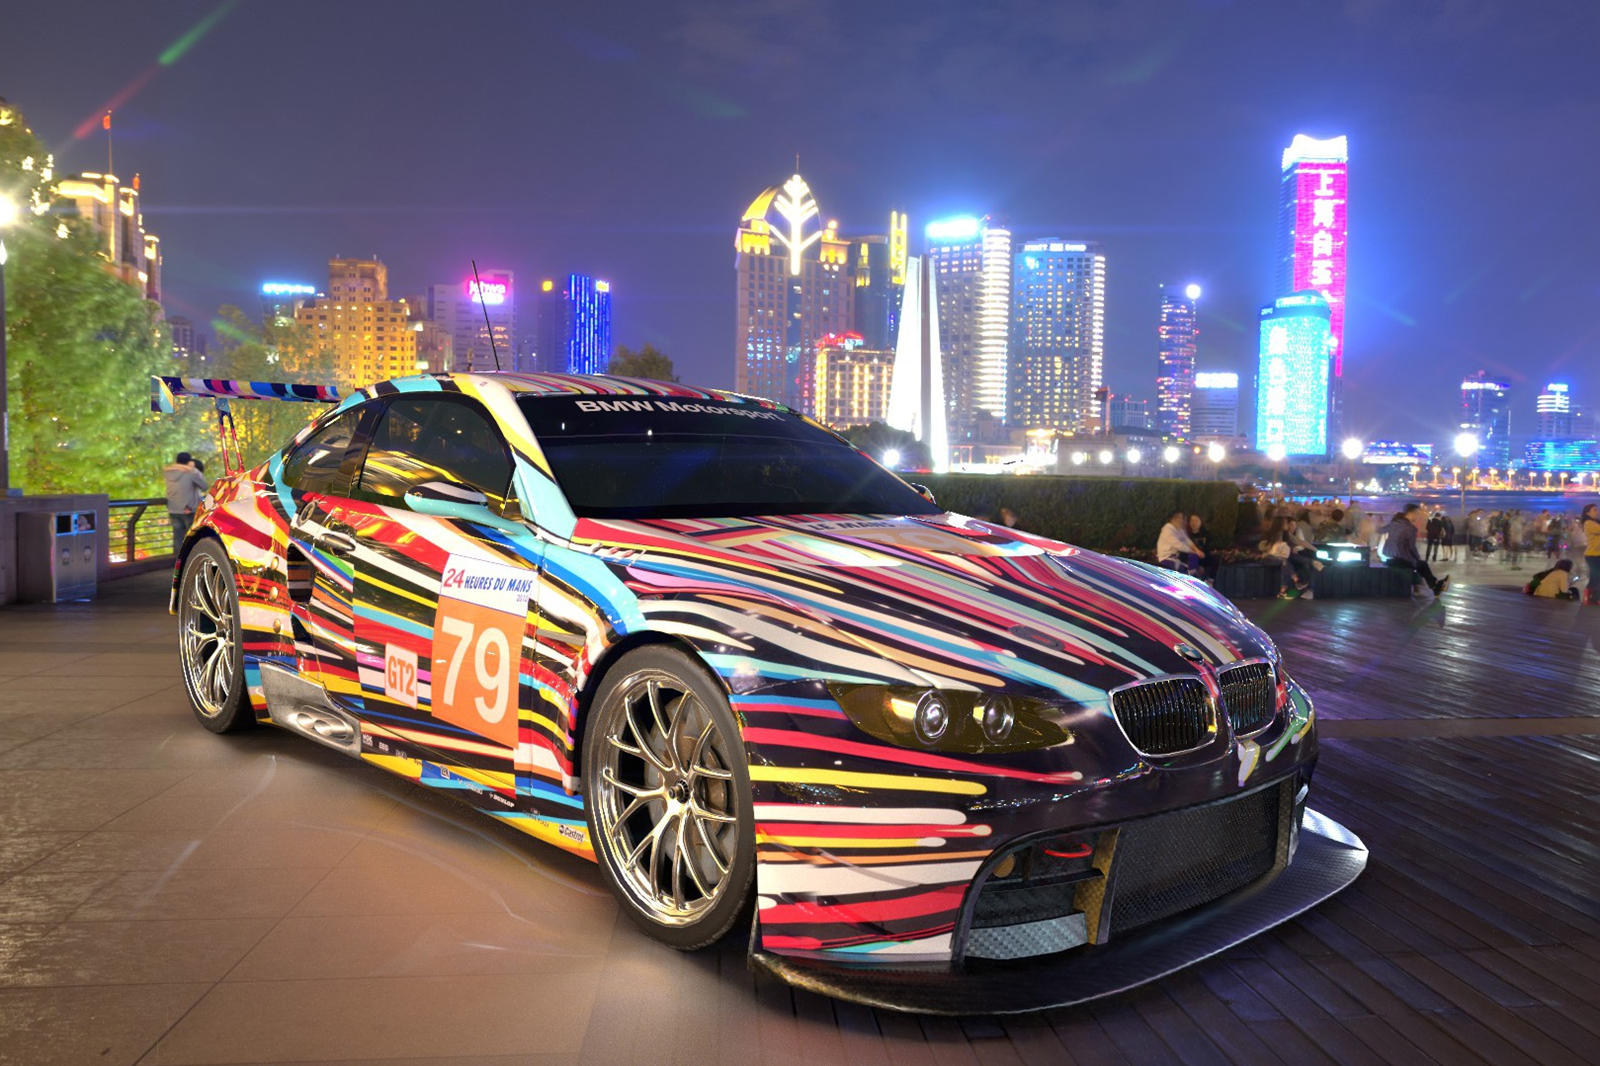 «Автомобили BMW Art Cars являются неотъемлемой частью ДНК культурного сотрудничества BMW, продолжающегося 50 лет. Наконец, они входят в сферу цифровых технологий и могут быть доступны везде и для всех. Я очень рад сотрудничеству с Acute Art, поскольк